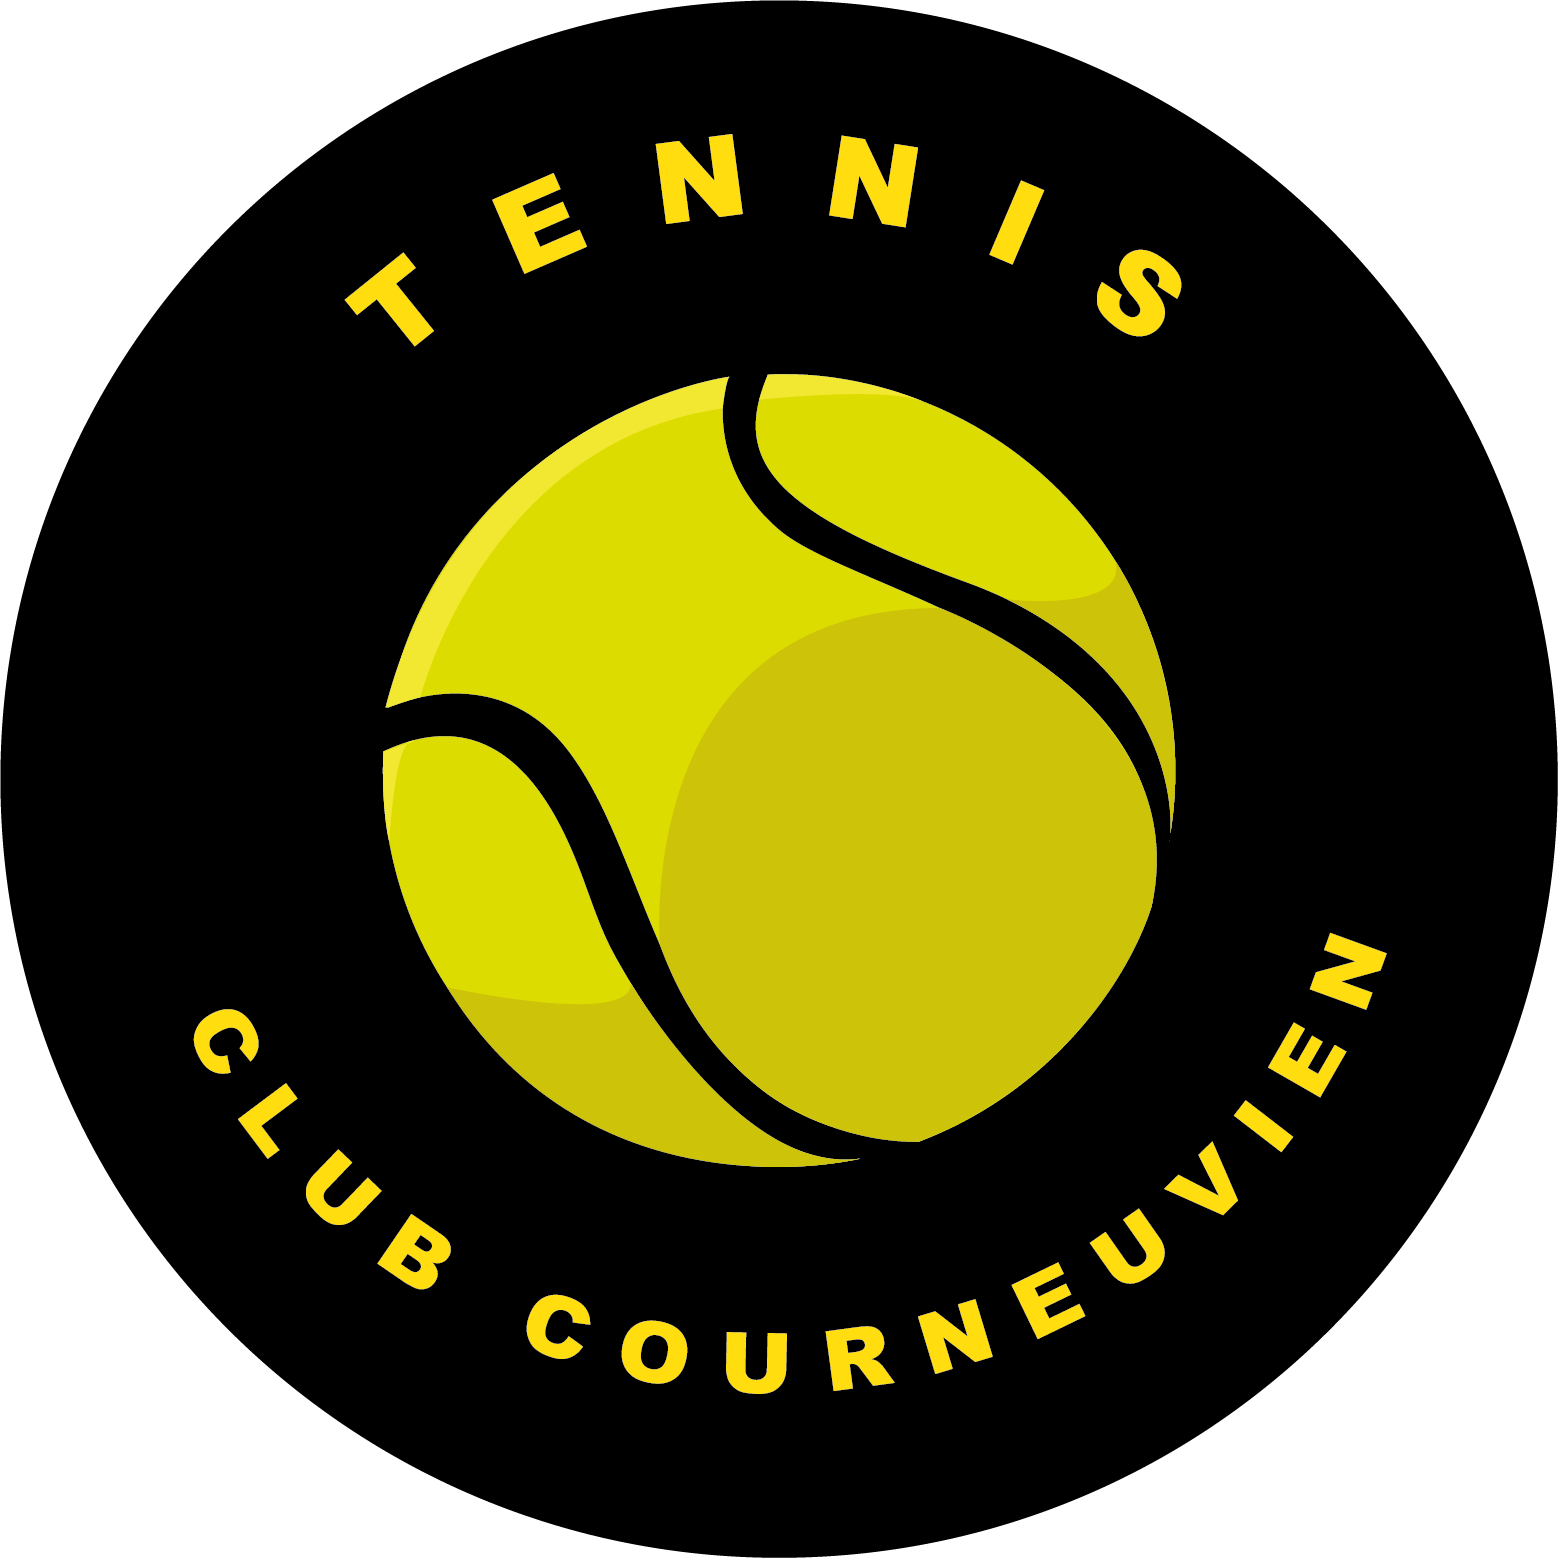 Tennis Club Courneuvien